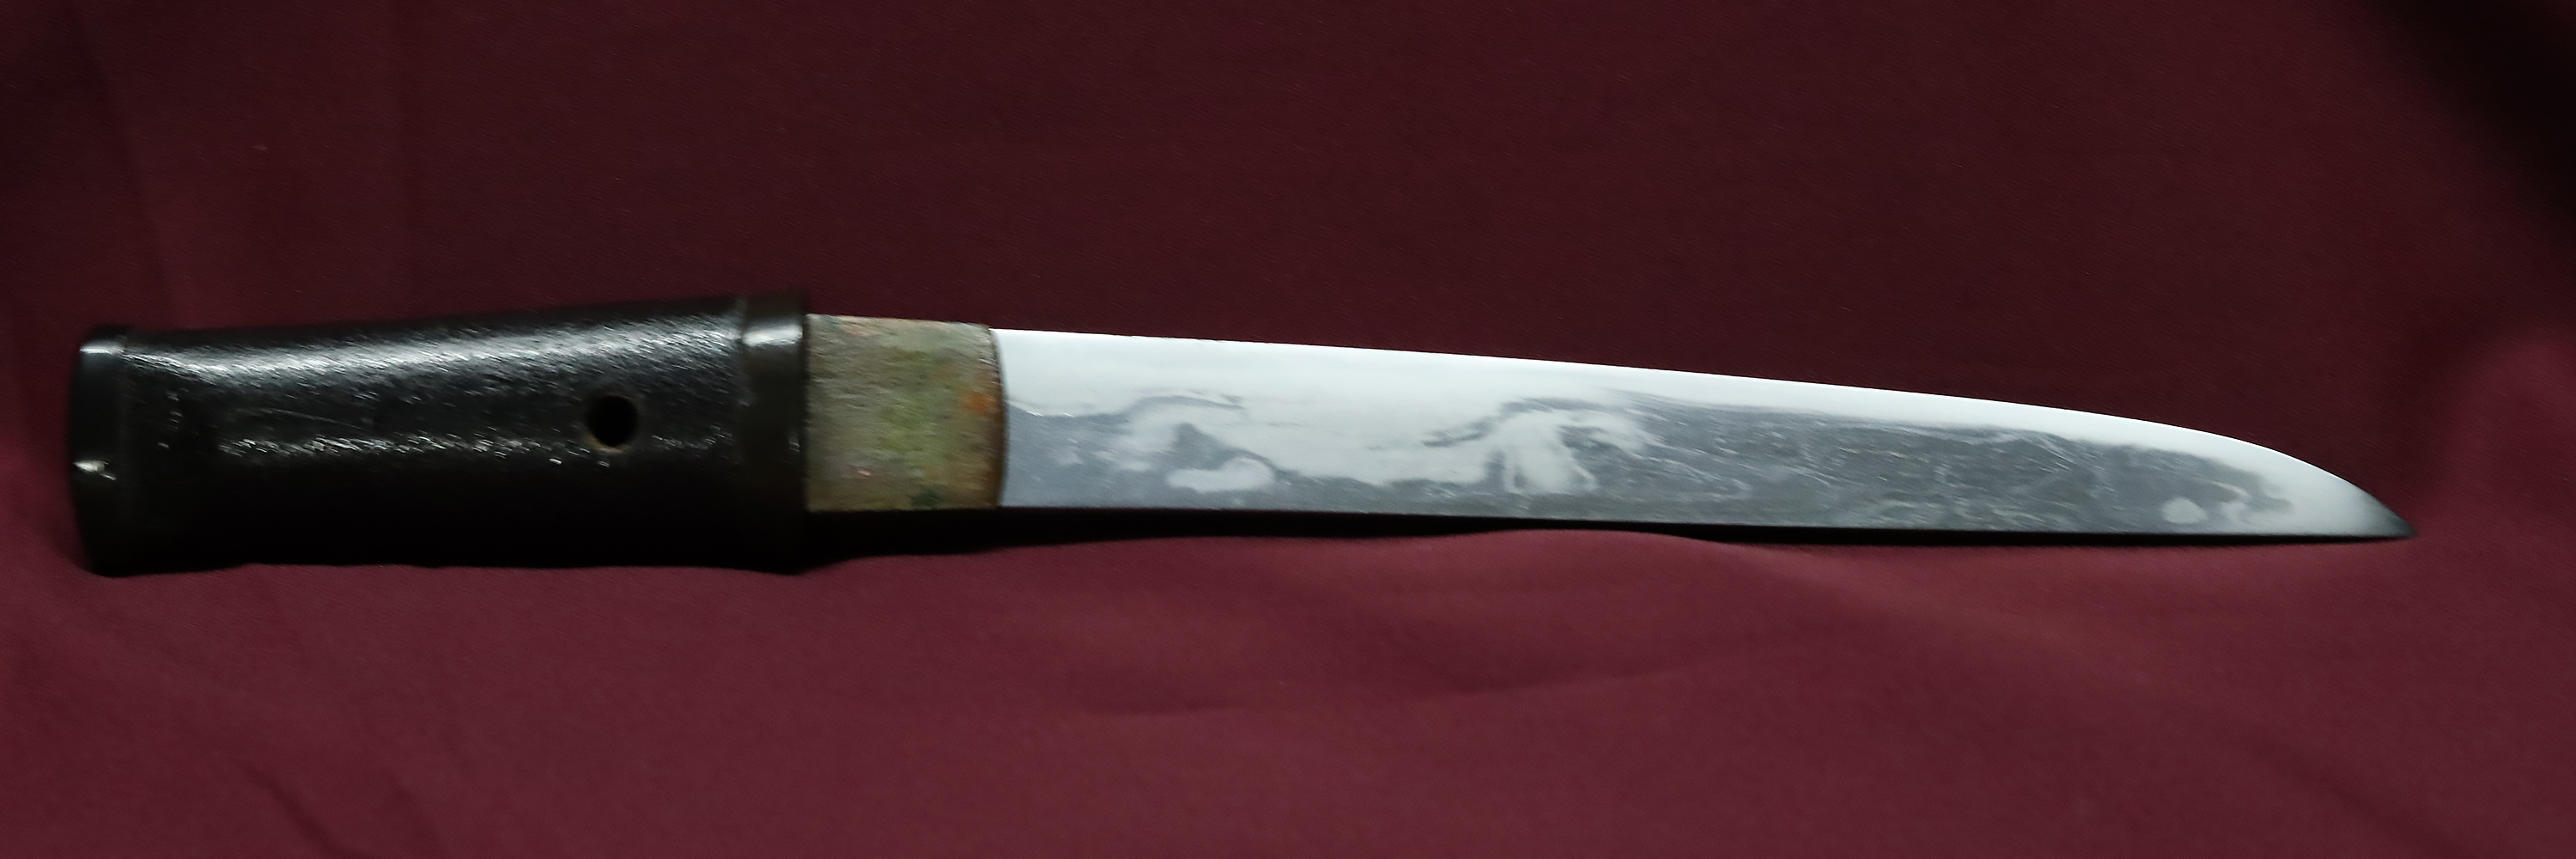 10万円で買える刀 | 日本刀販売・刀剣販売の「勇進堂」| Katana Japanese Sword - YUSHINDOU